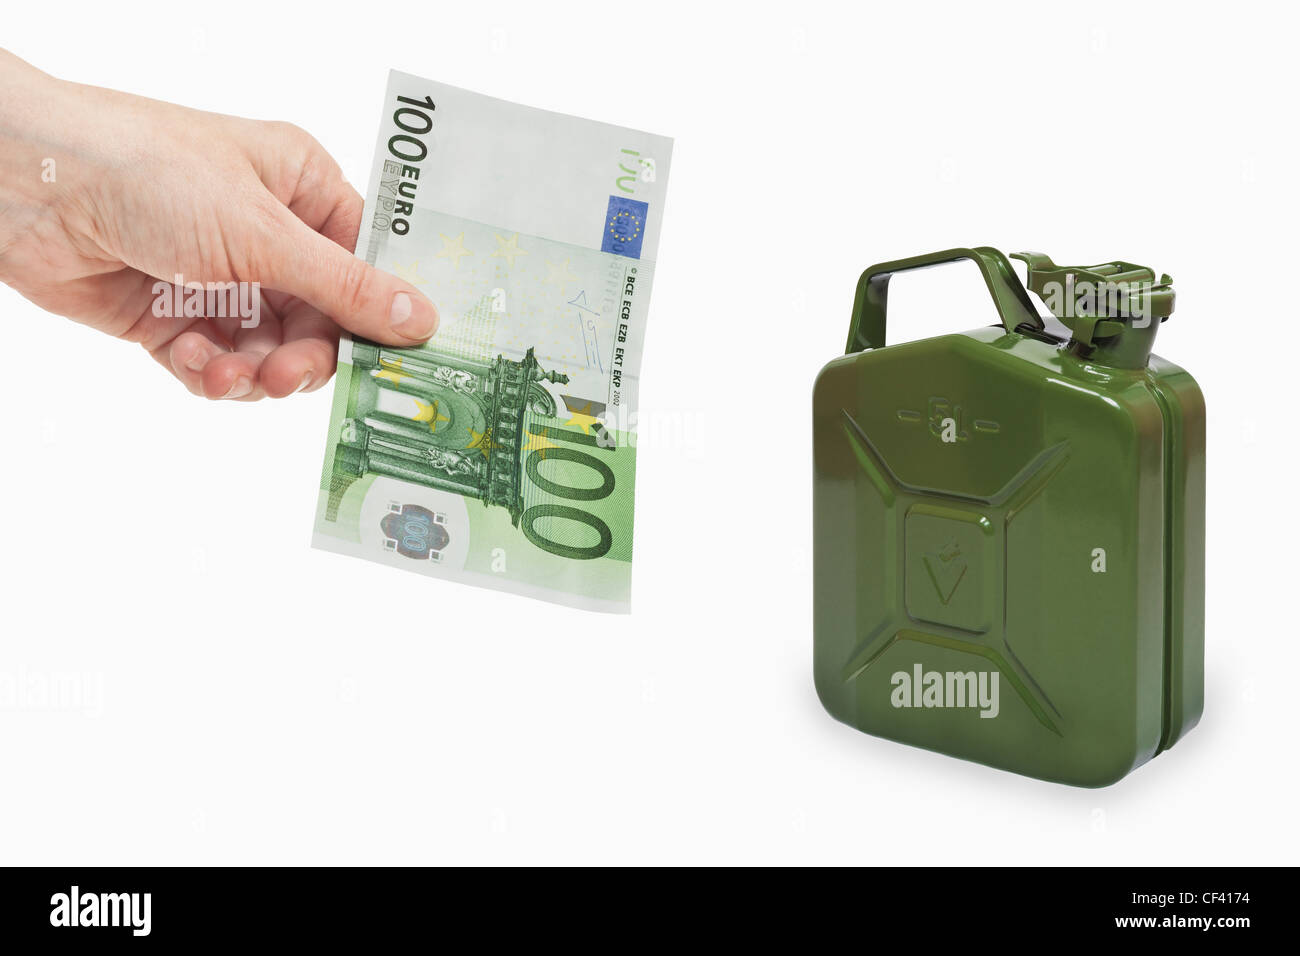 Ein 100 Euro-Schein in der Hand, in der Nähe von gehalten wird ist eine grüne 5 Liter Benzin Kanister Metall, Hintergrund weiß. Stockfoto